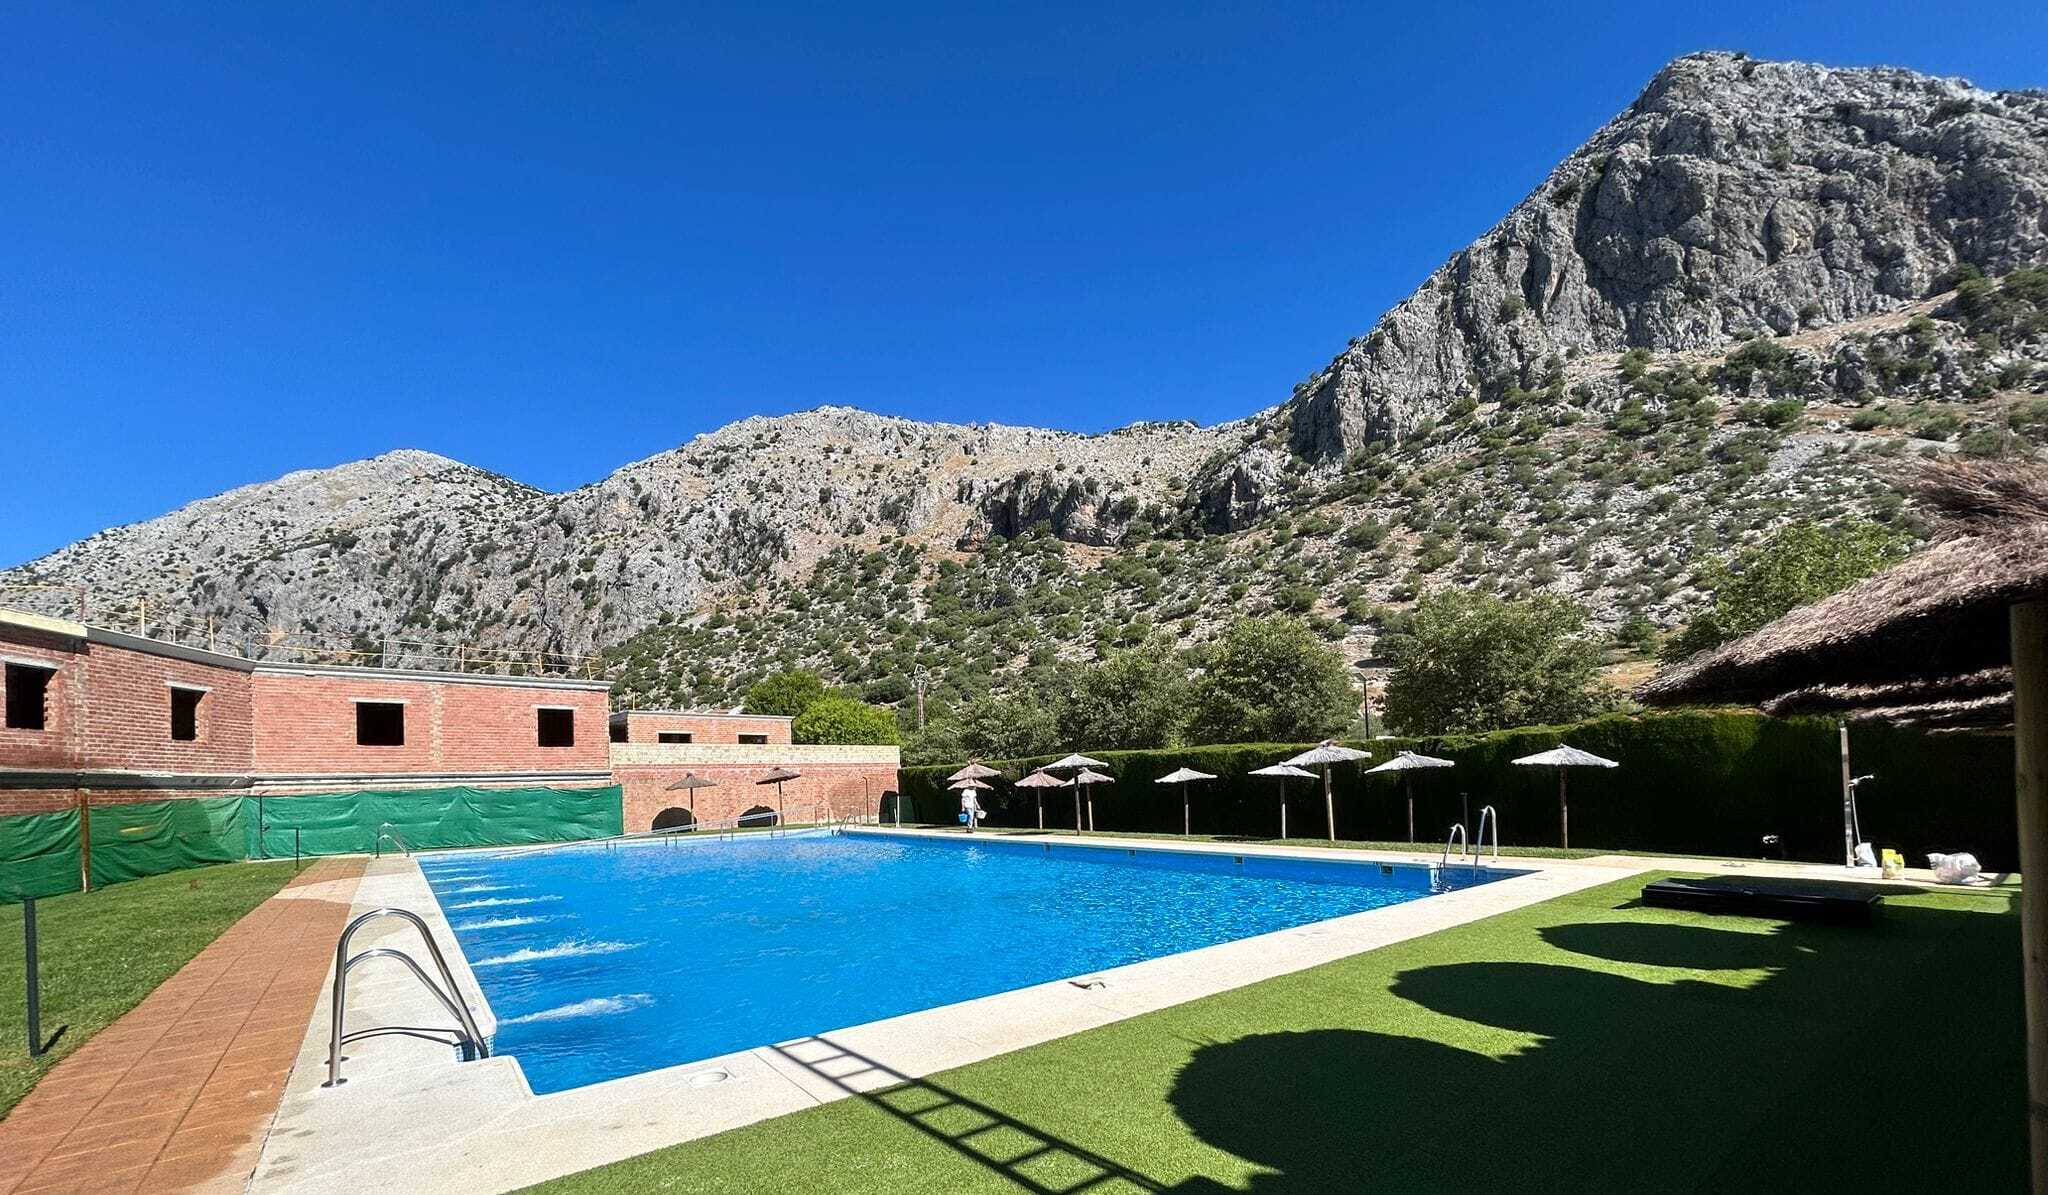 La piscina municipal de Villaluenga del Rosario, con vistas impresionantes a la Sierra de Cádiz.